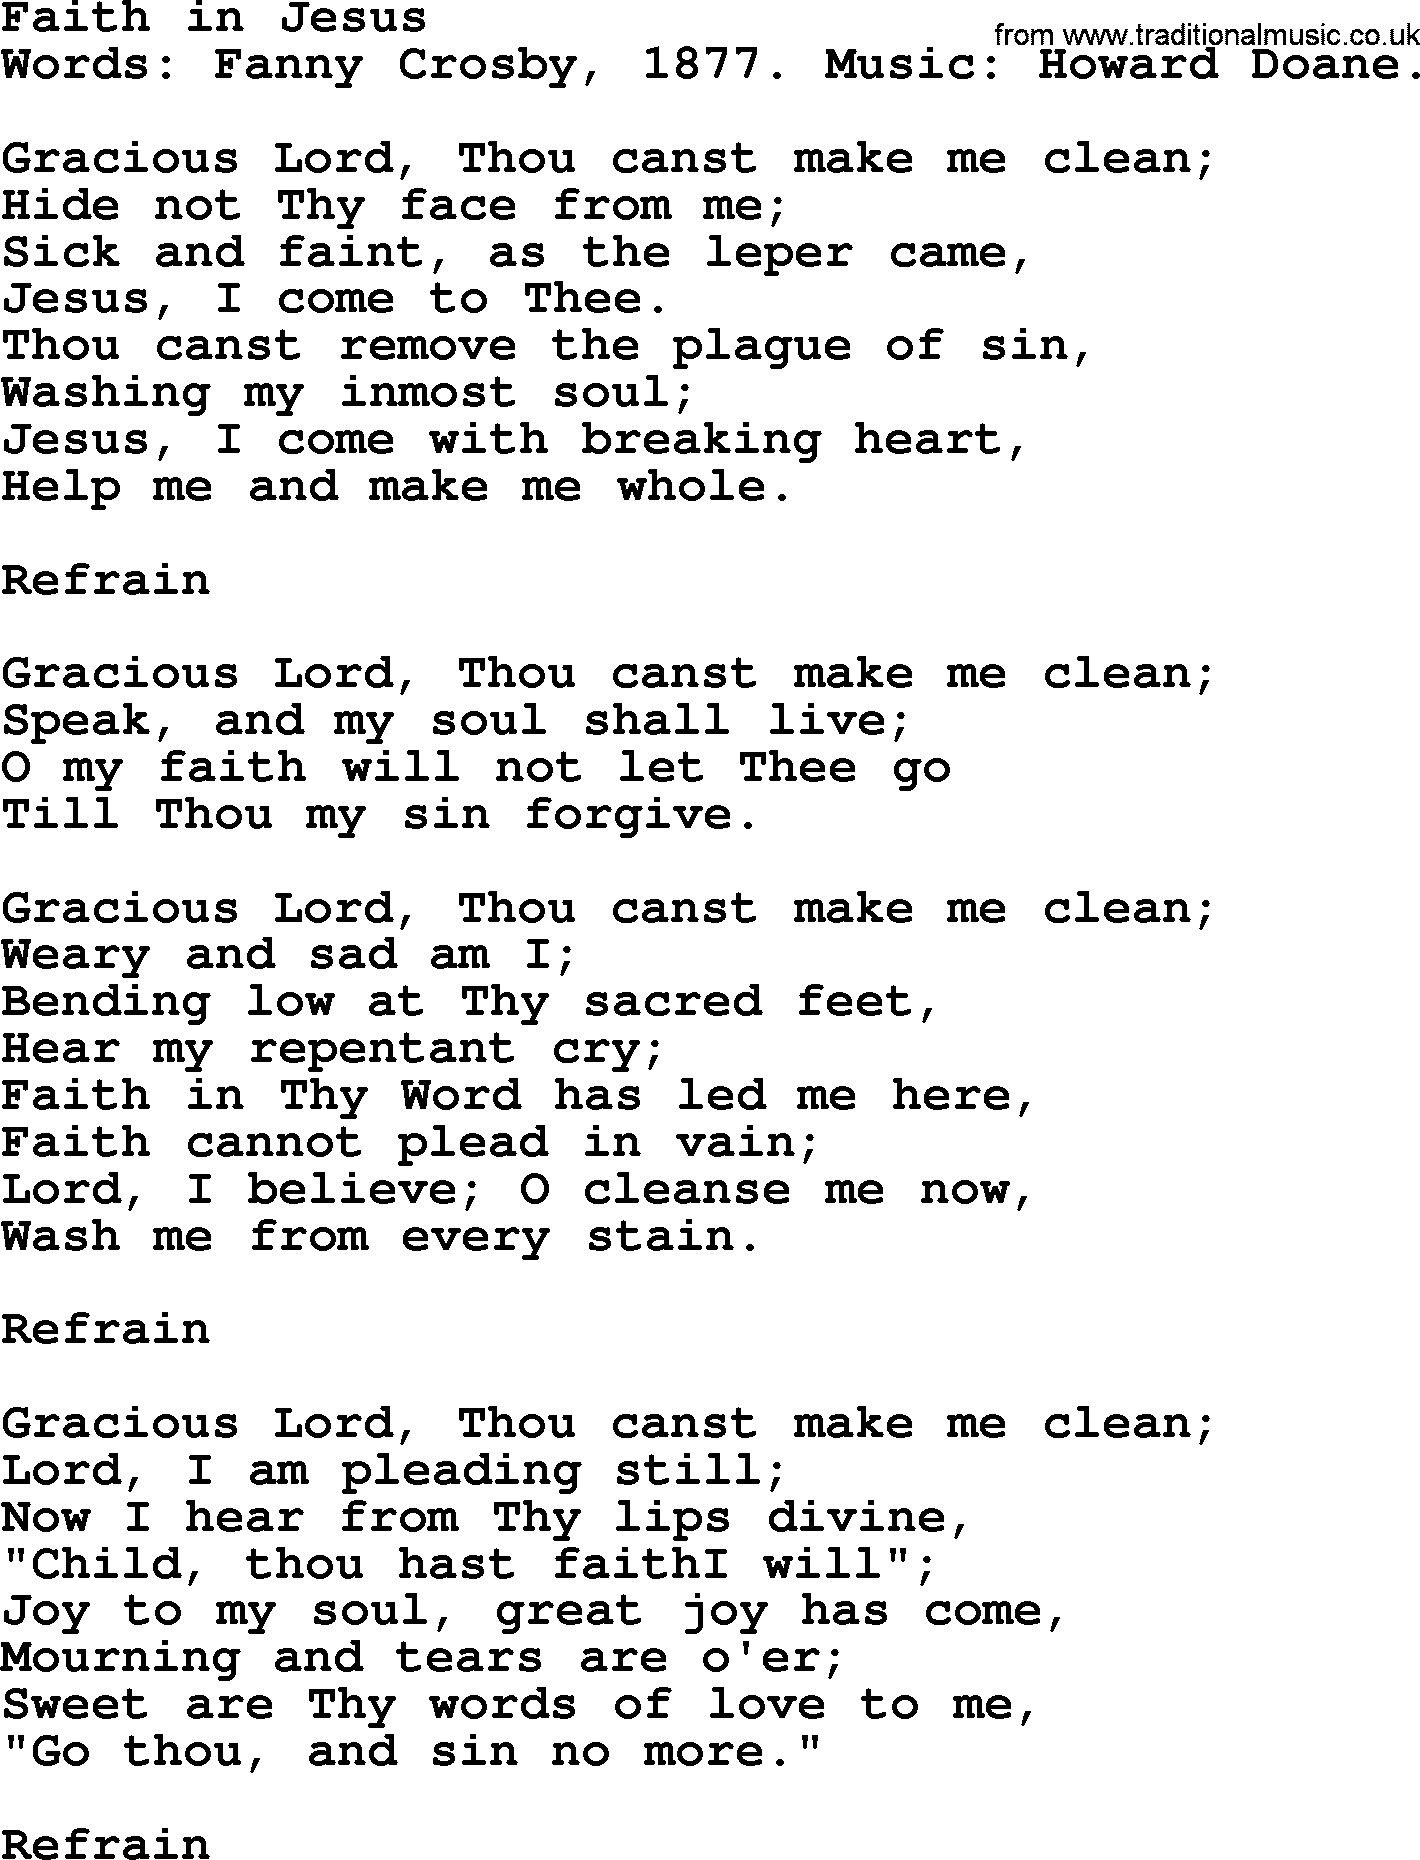 Fanny Crosby song: Faith In Jesus, lyrics